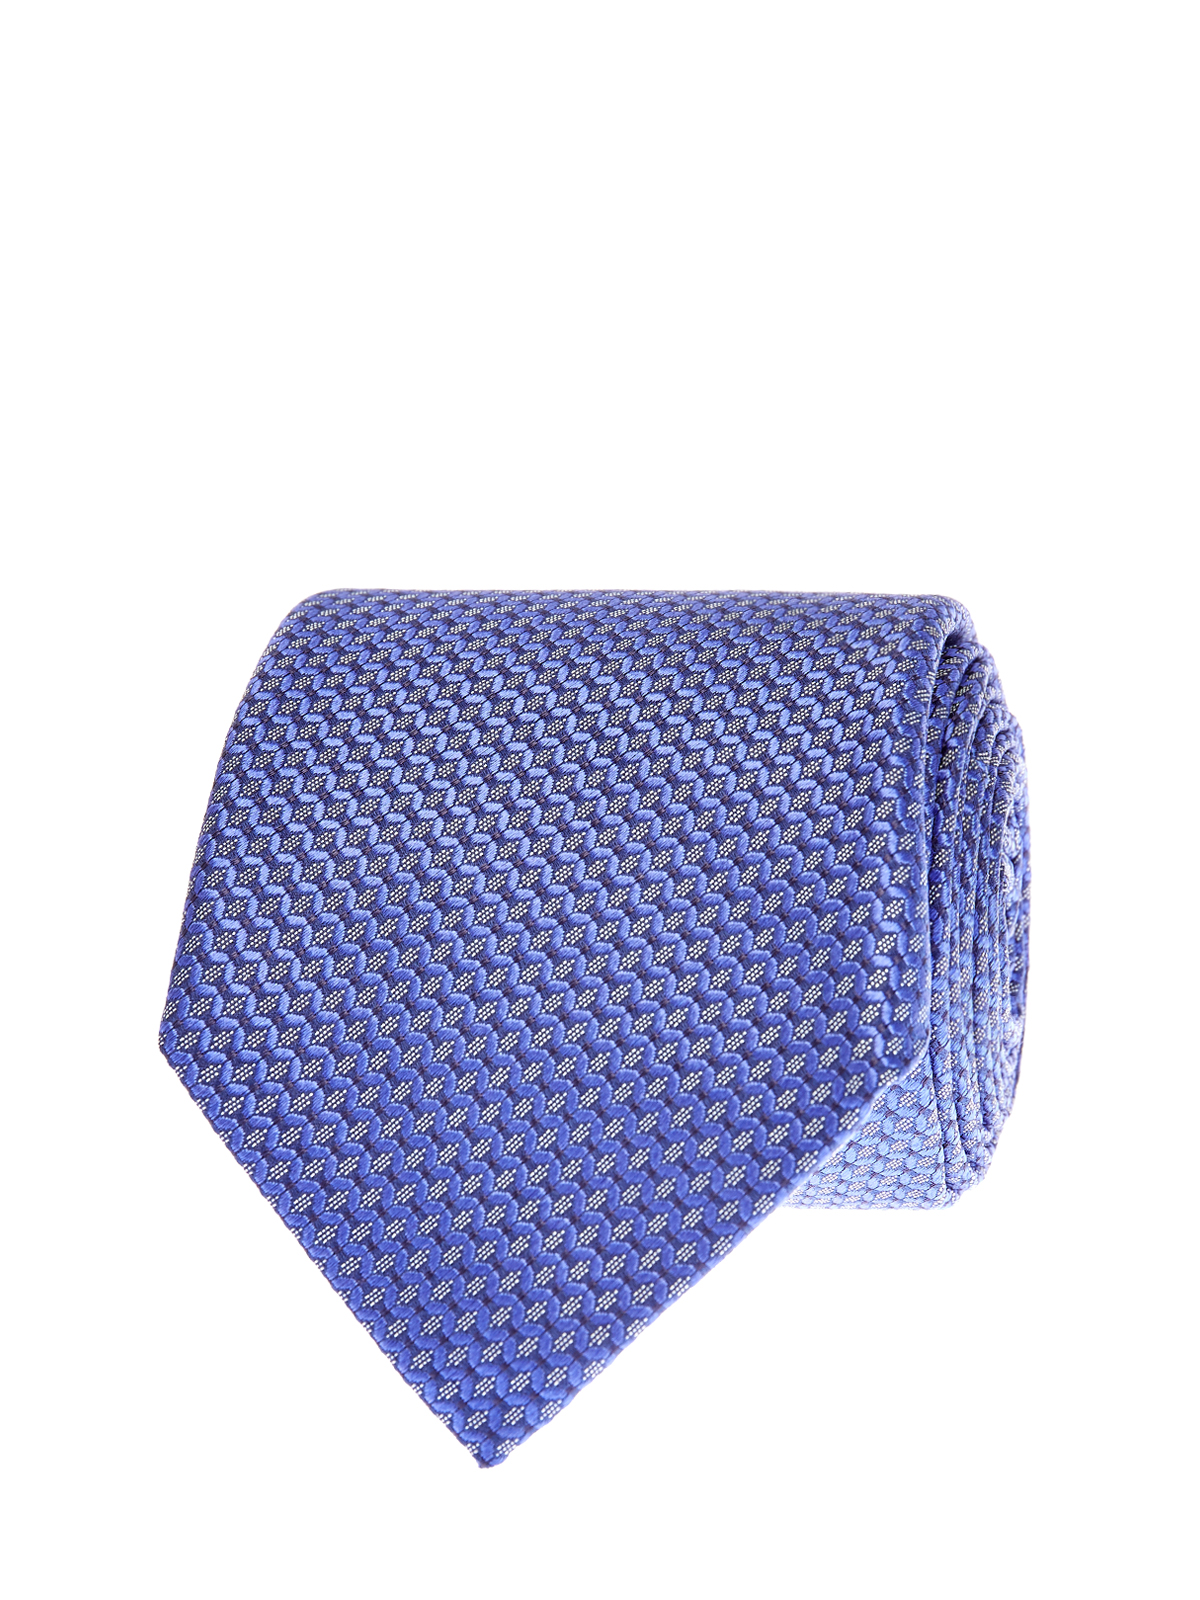 Шелковый галстук с жаккардовым принтом и логотипом CANALI, цвет синий, размер M